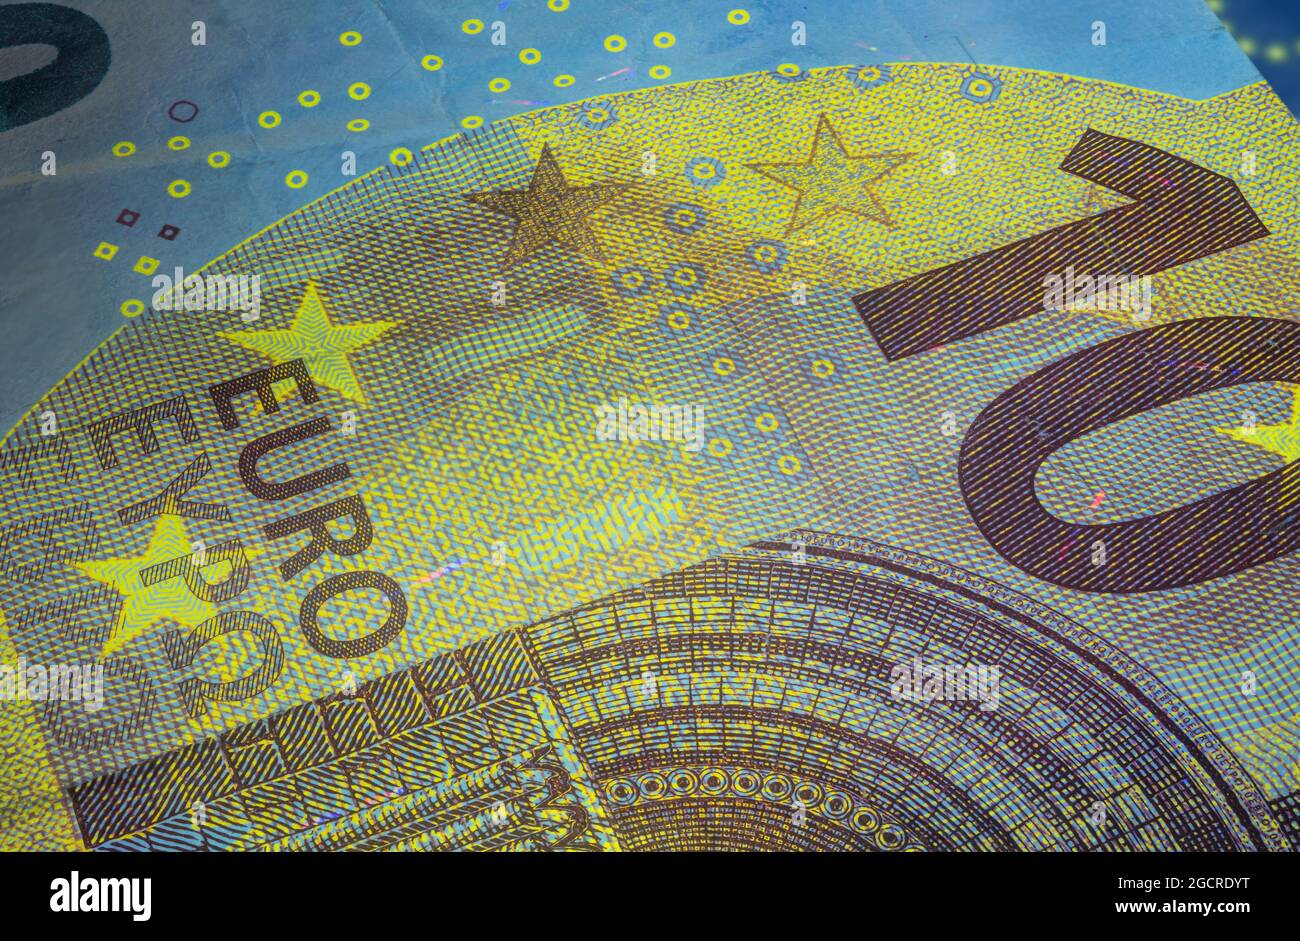 Banconota da dieci Euro sotto luce UV fluorescente. Immagine macro in primo piano del denaro europeo illuminata con luce Fluor. Carta moneta del centro europeo Foto Stock